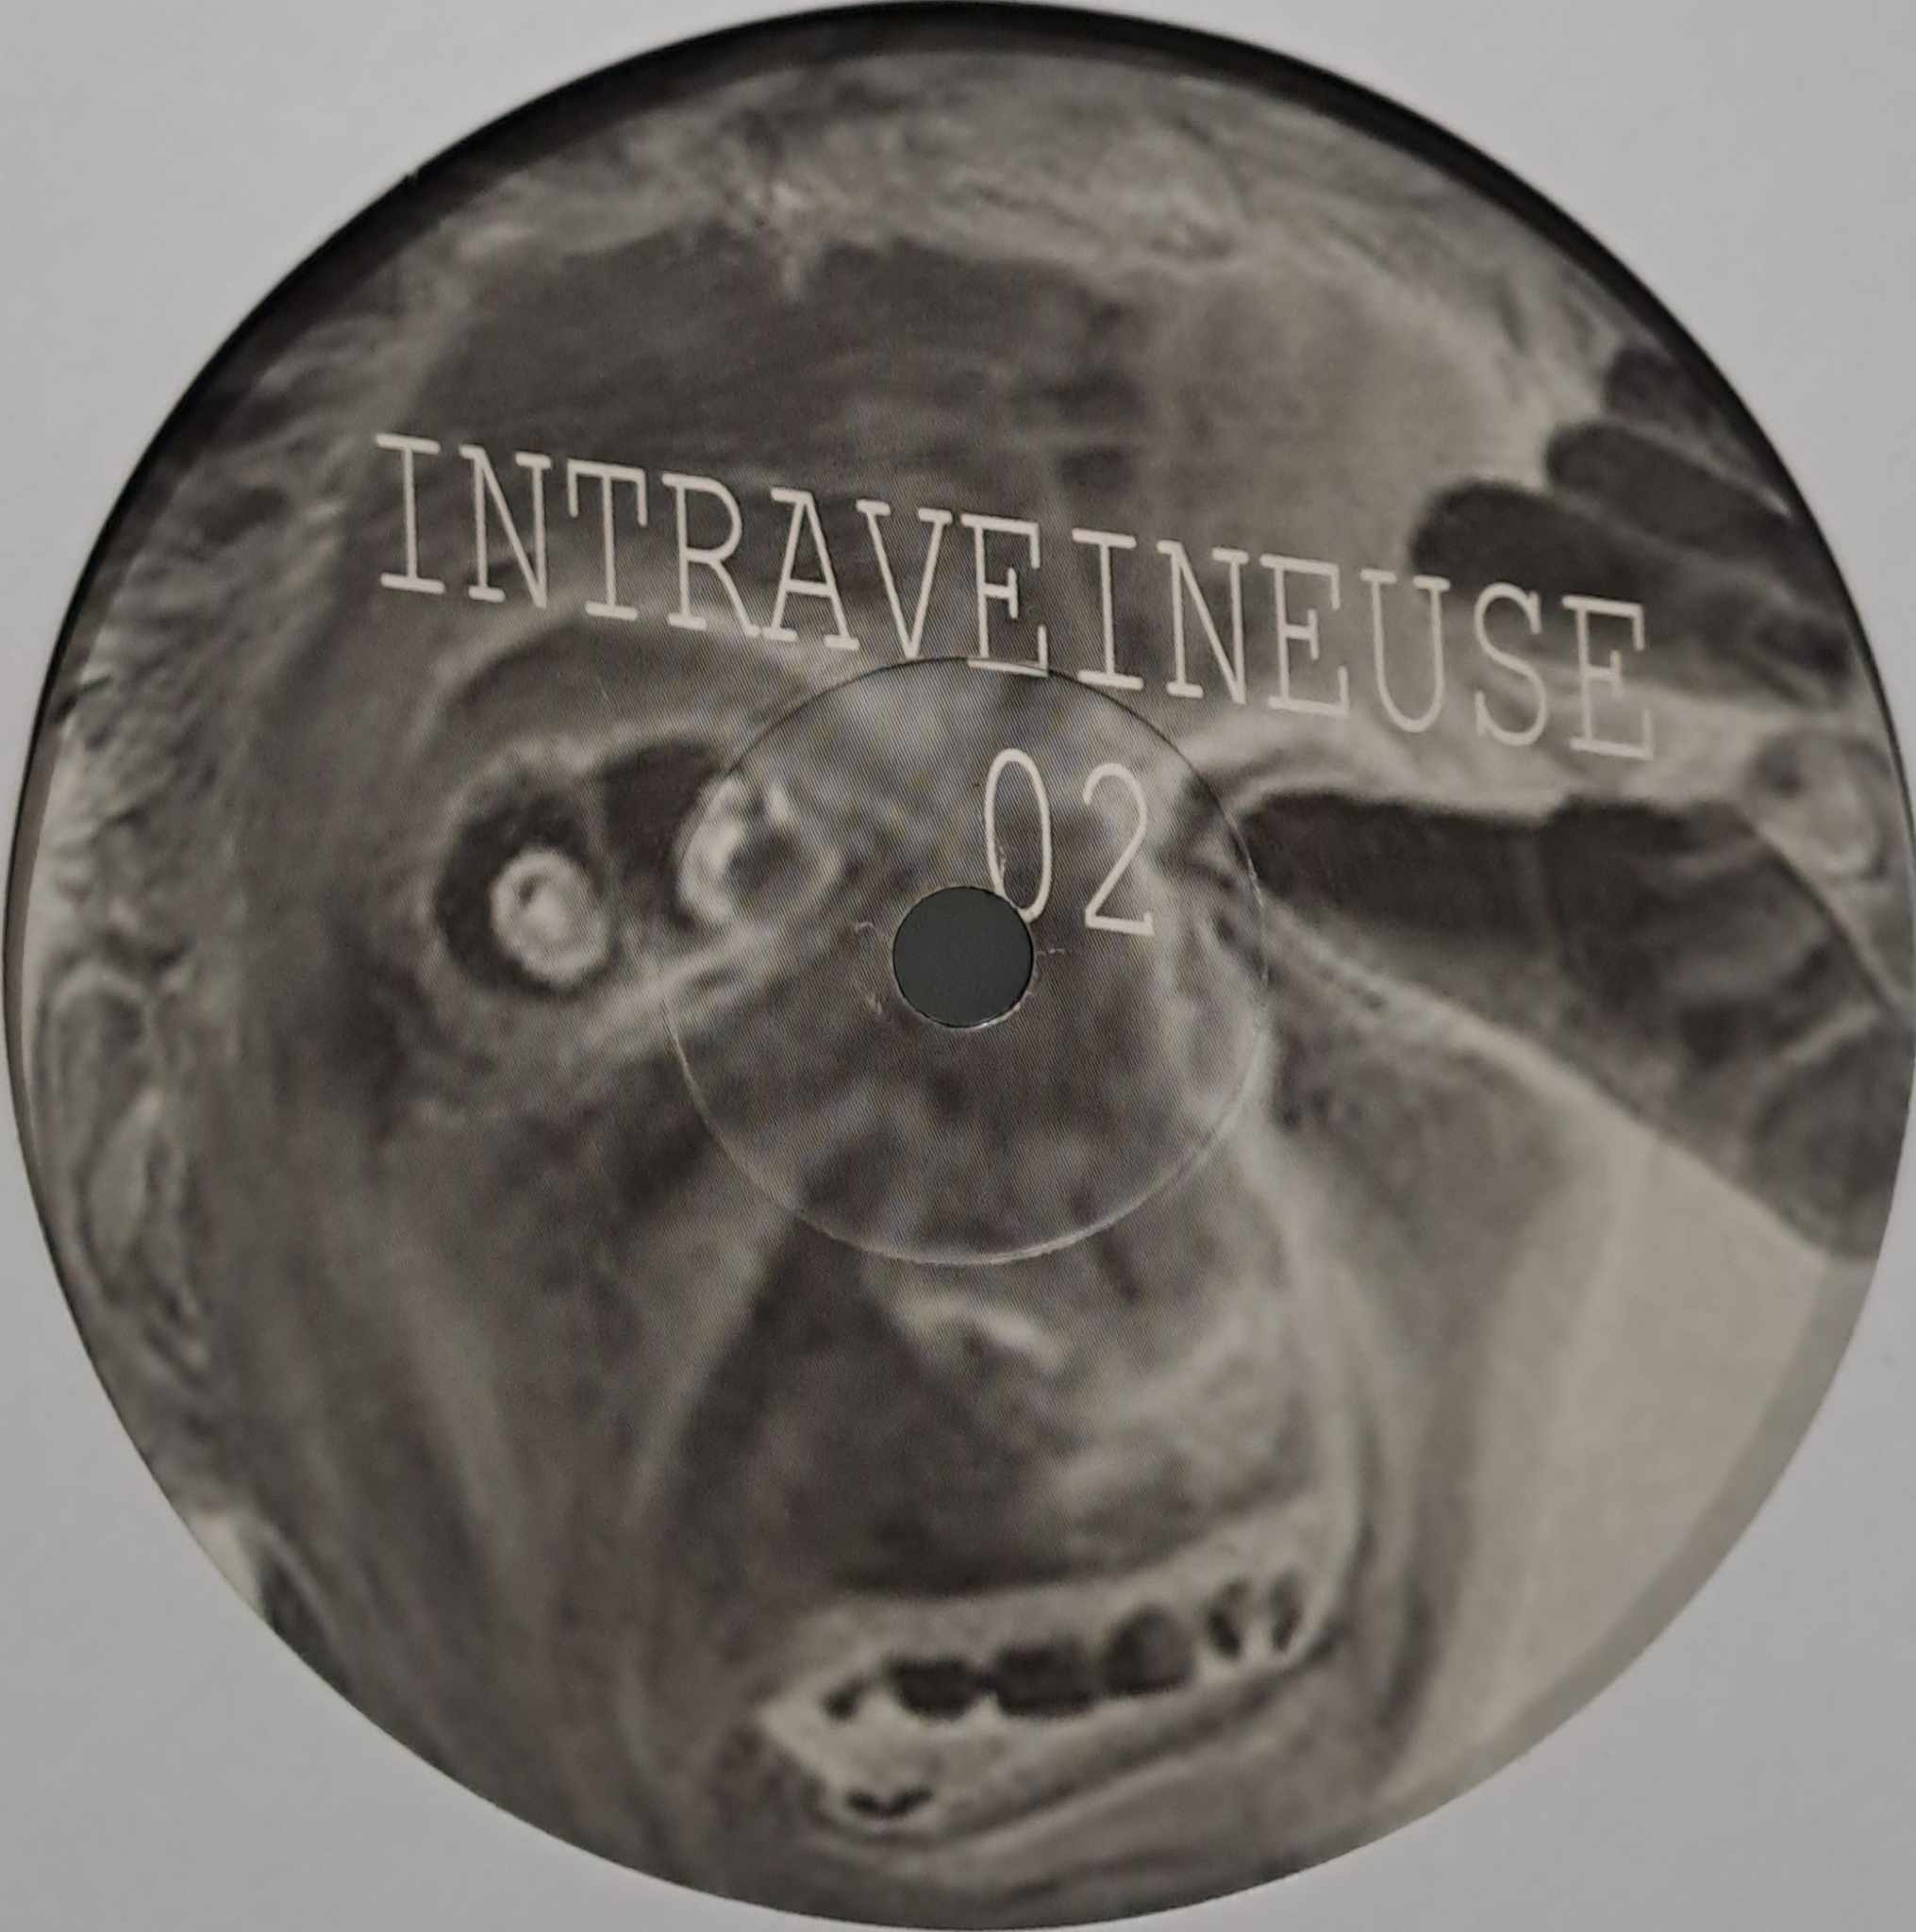 Intraveineuse 02 - vinyle freetekno